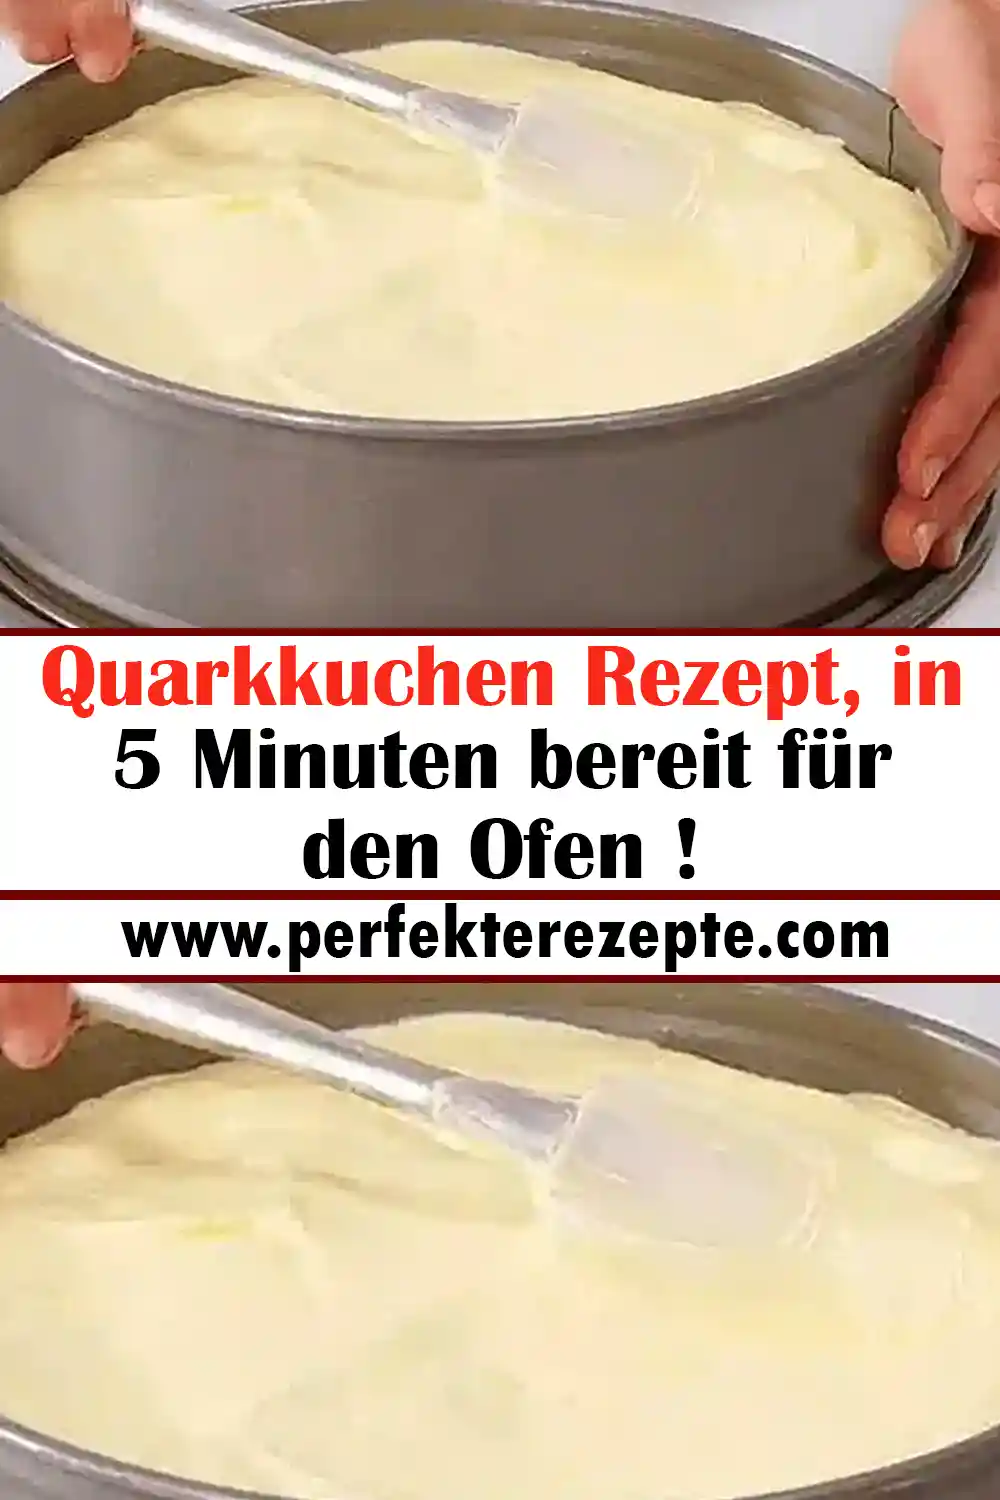 Quarkkuchen Rezept, in 5 Minuten bereit für den Ofen !